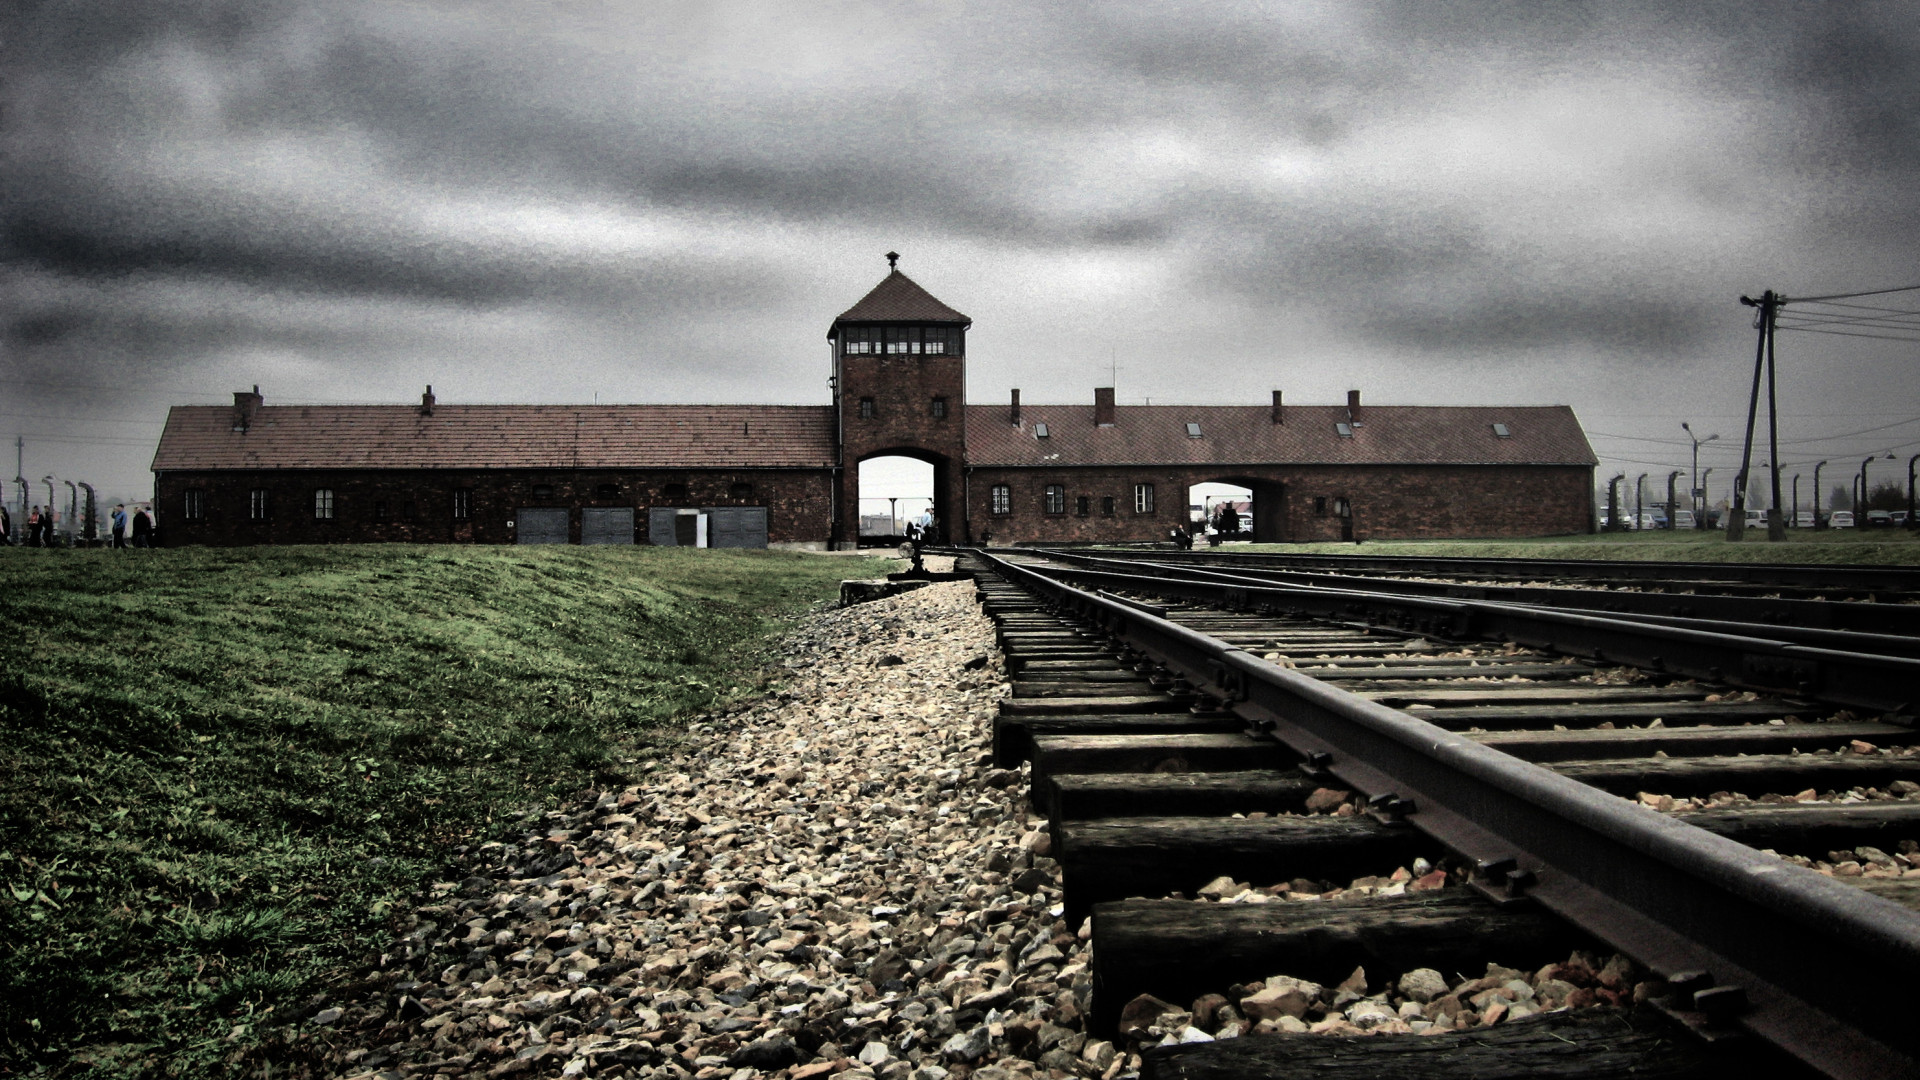 Museu de Auschwitz pede que visitantes evitem caminhadas sobre trilhos